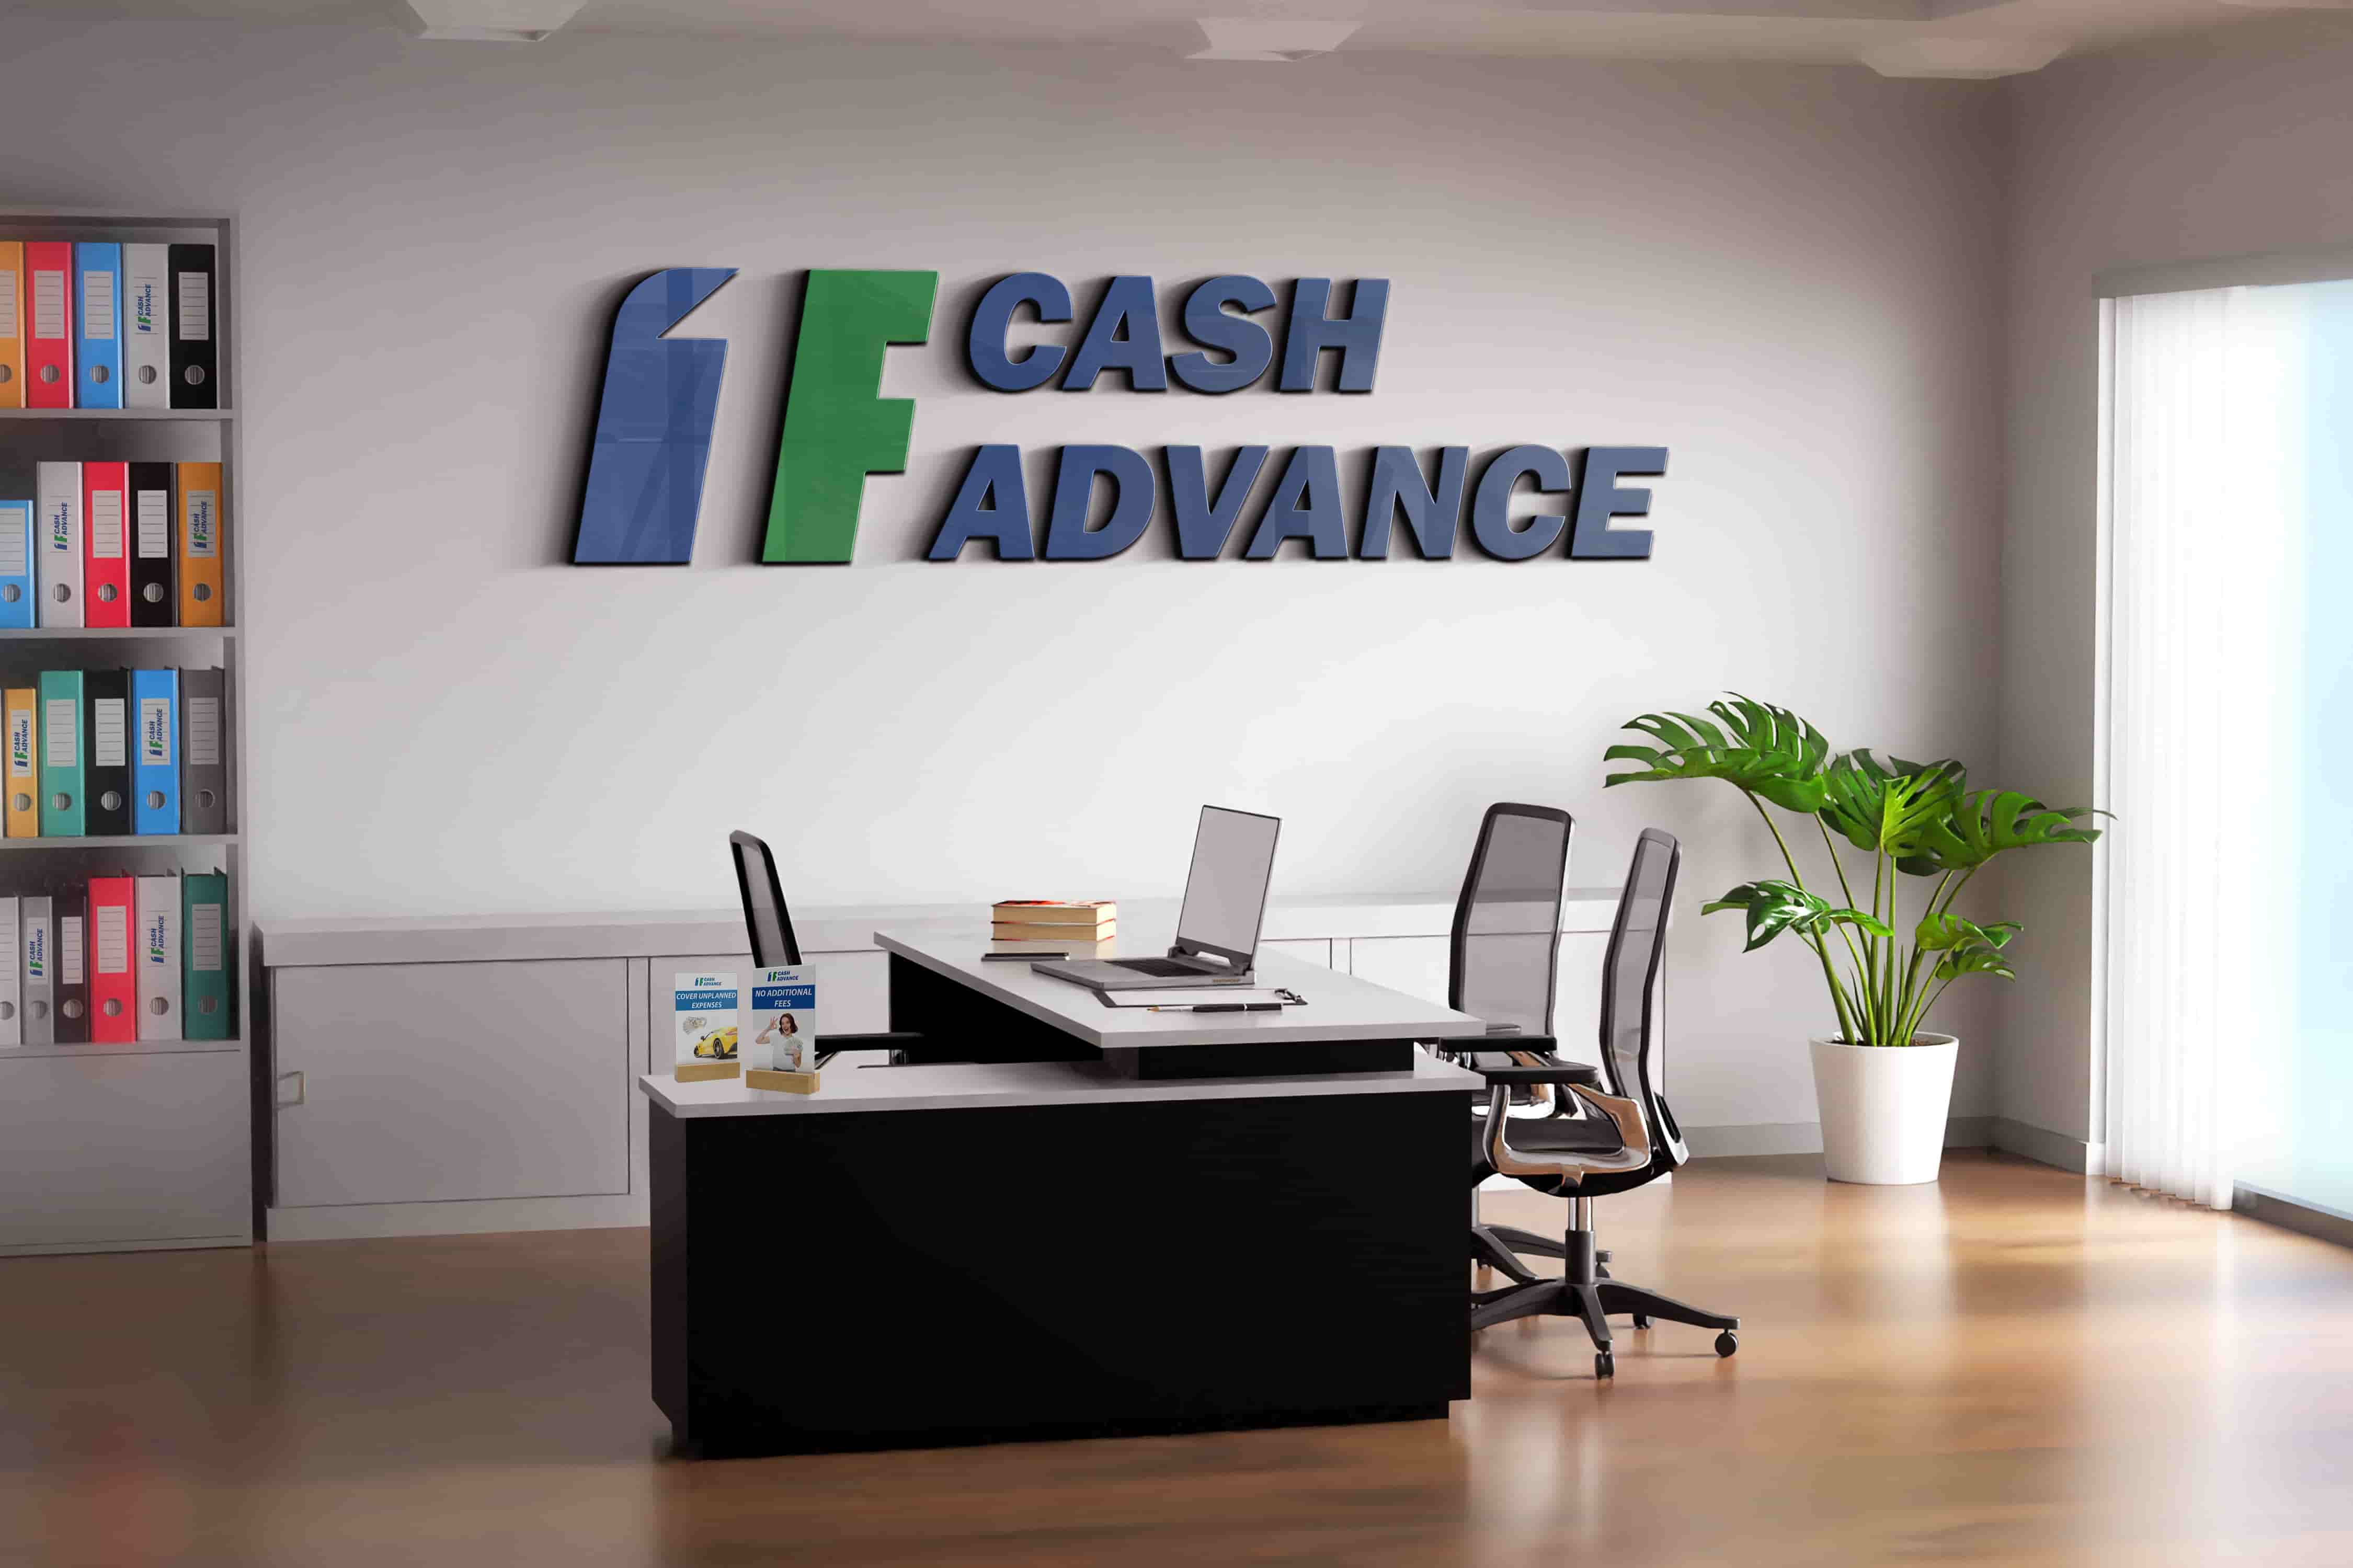 1F Cash Advance payday loans Honolulu, HI